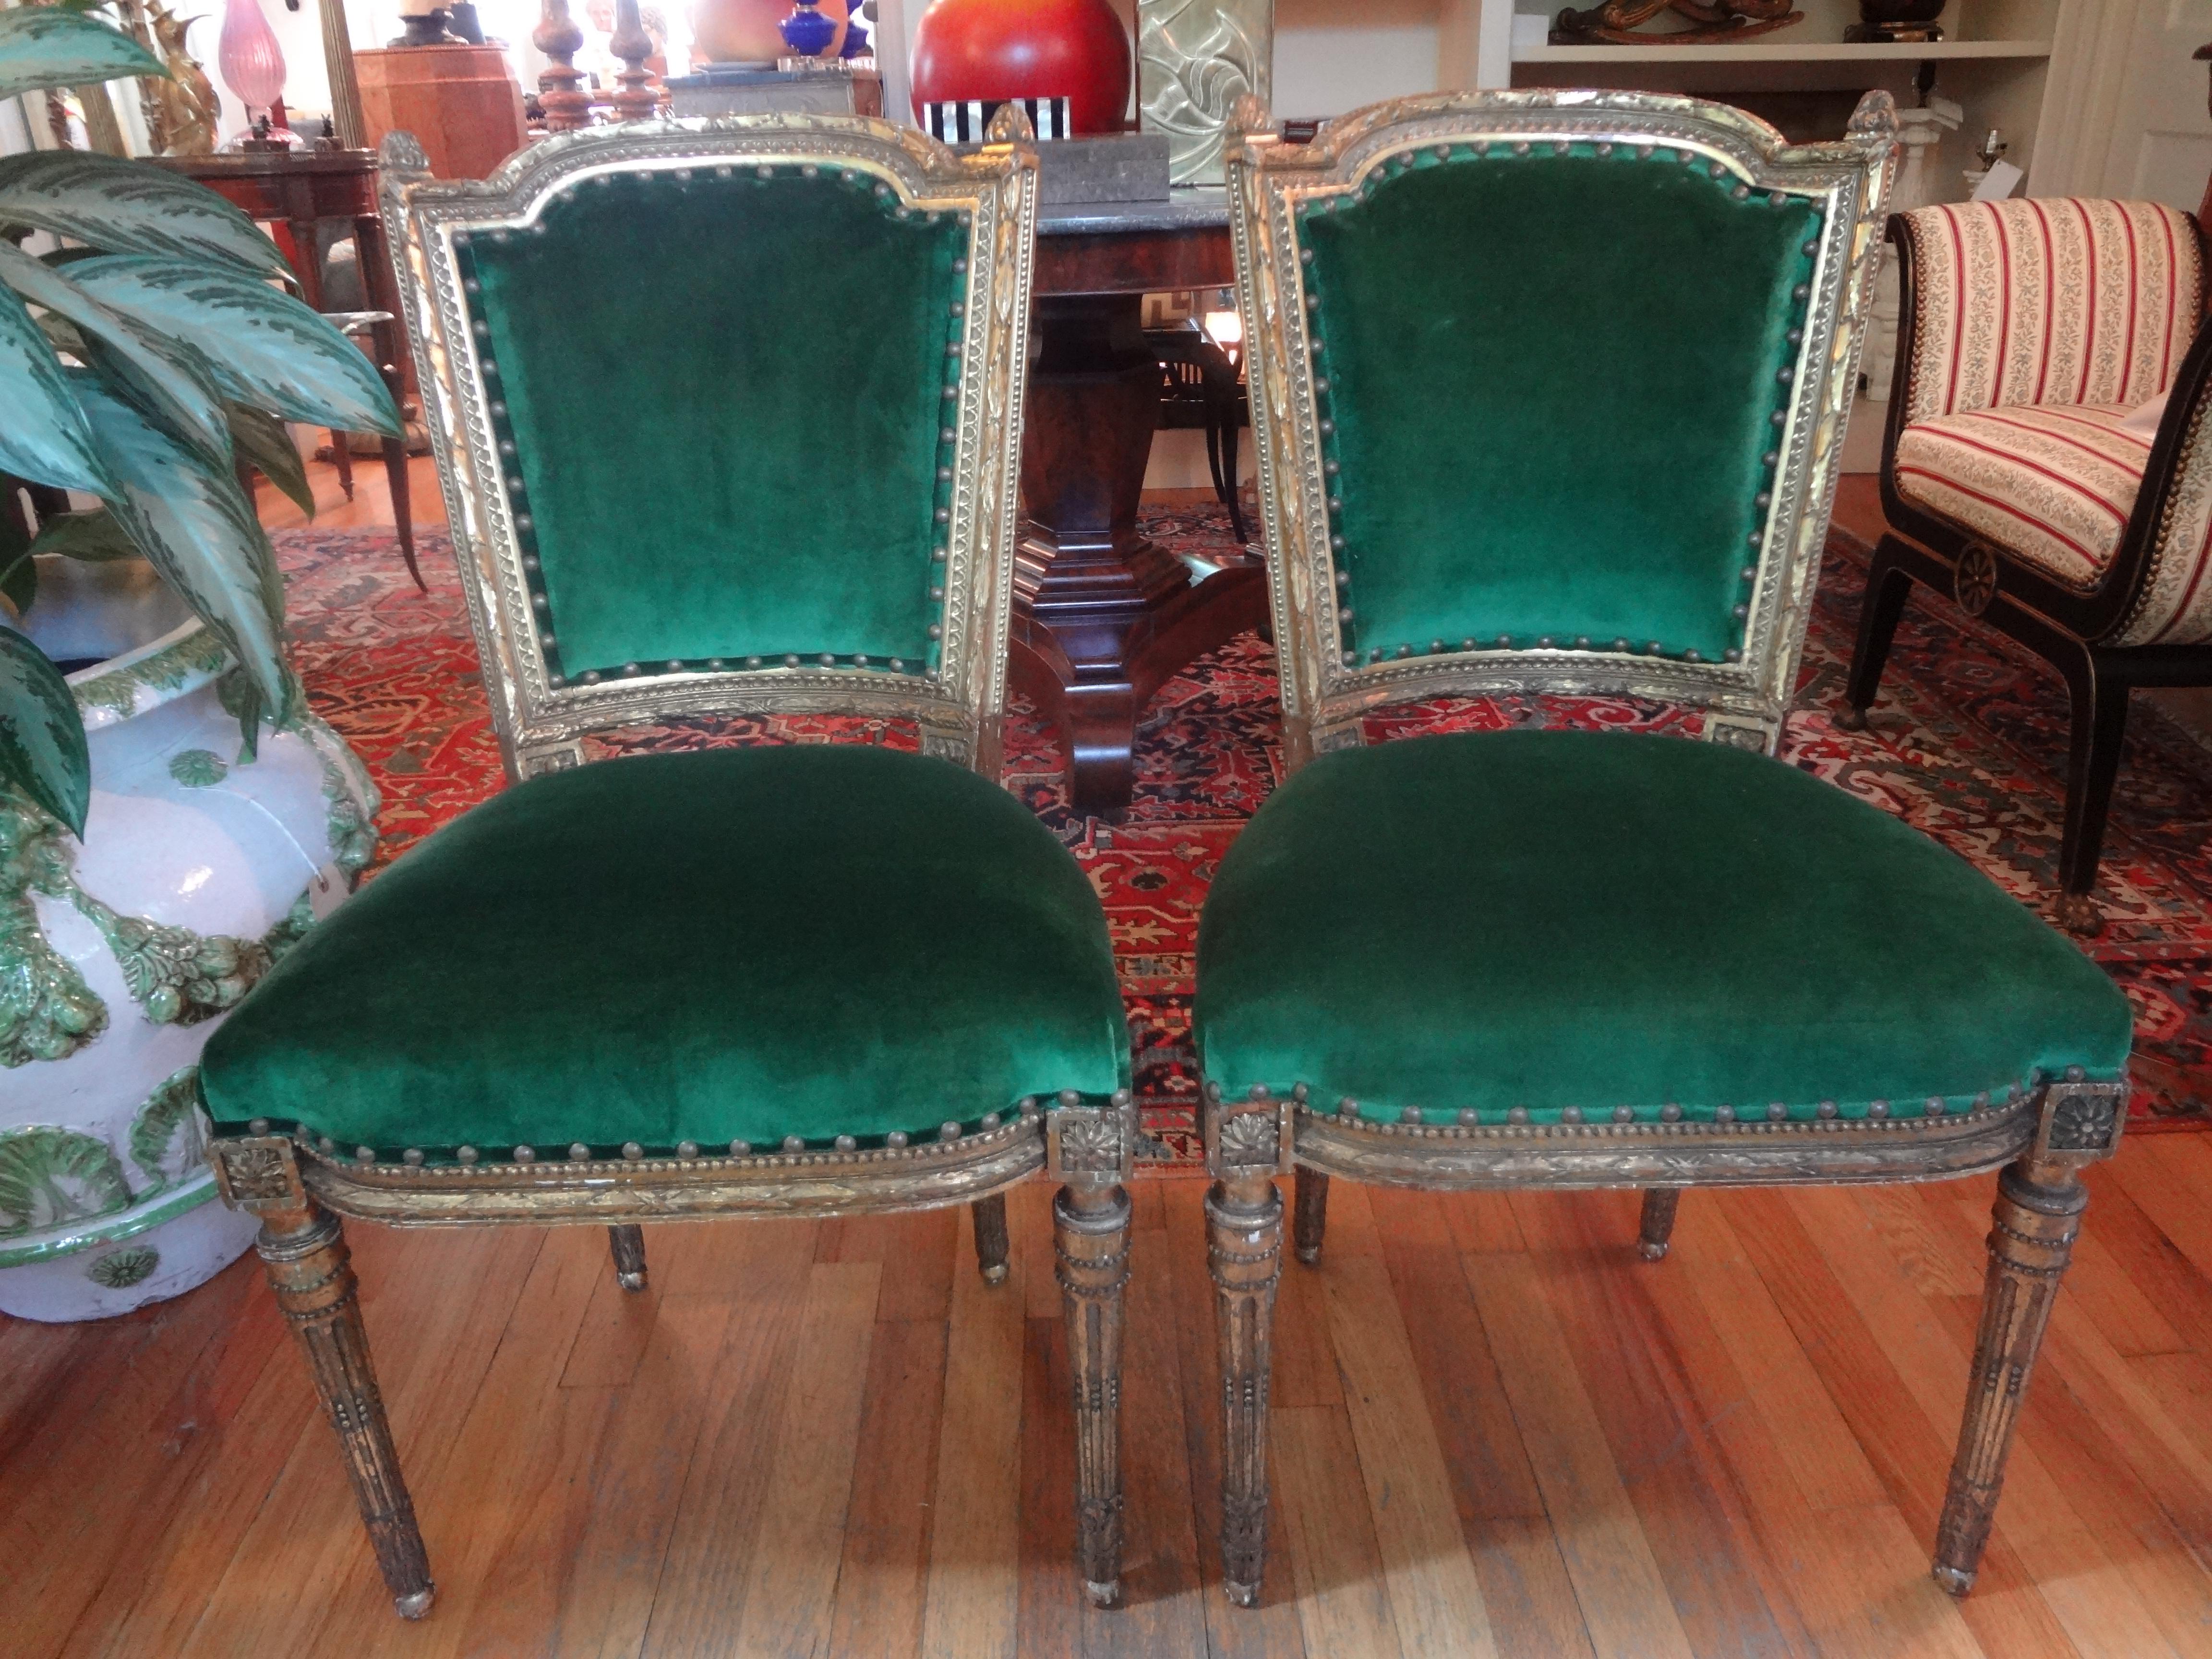 Fabuleuse paire de chaises latérales en bois doré de style Louis XVI du milieu du XIXe siècle. Ces chaises dorées françaises très détaillées ont des pieds avant et arrière identiques et ont été professionnellement tapissées de velours vert émeraude